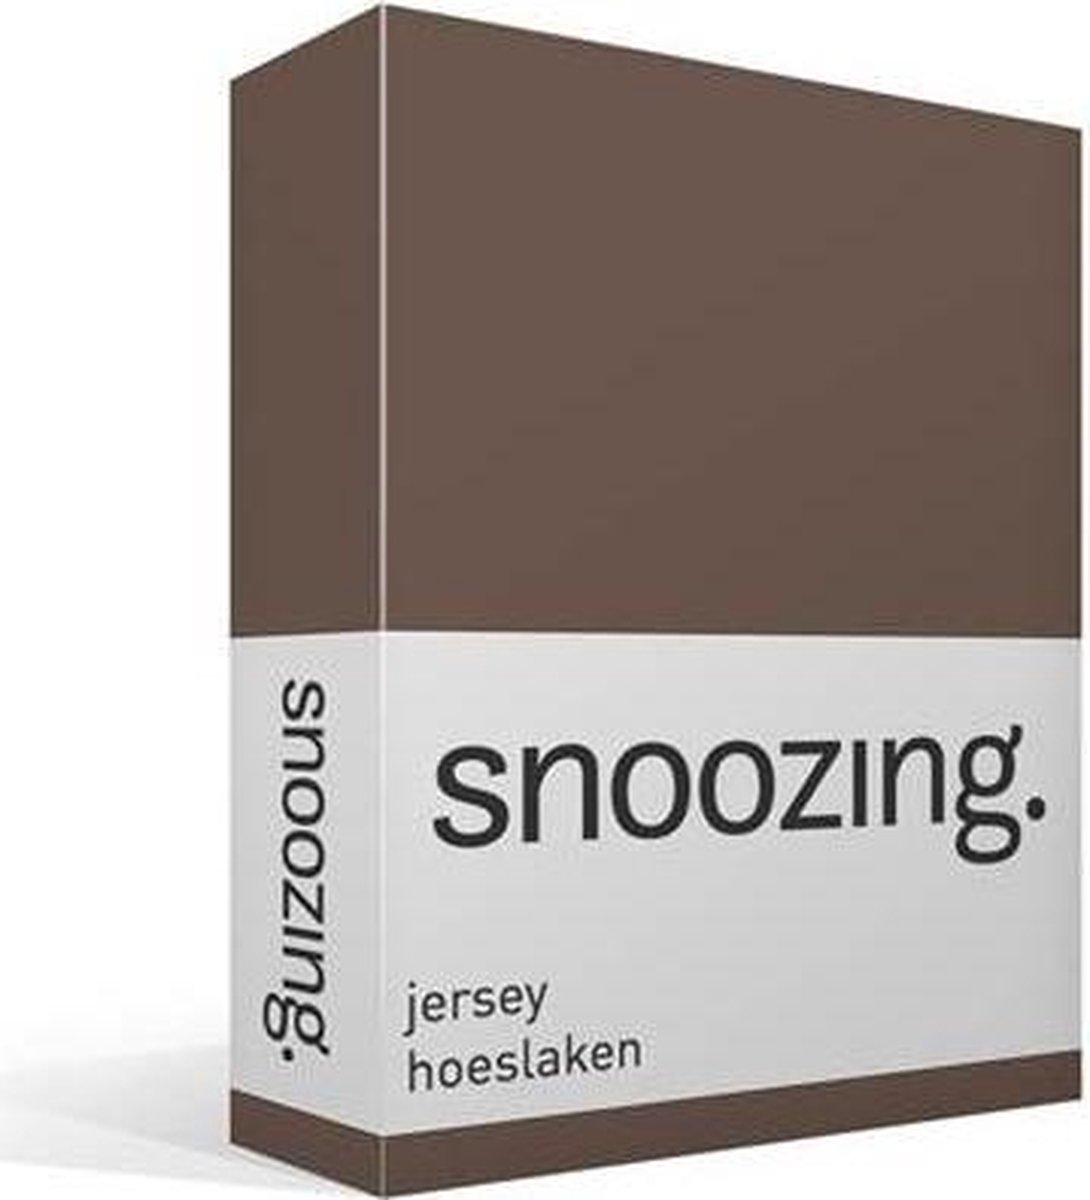 Snoozing Jersey Hoeslaken - 100% Gebreide Jersey Katoen - 1-persoons (70x200 Cm) - Taupe